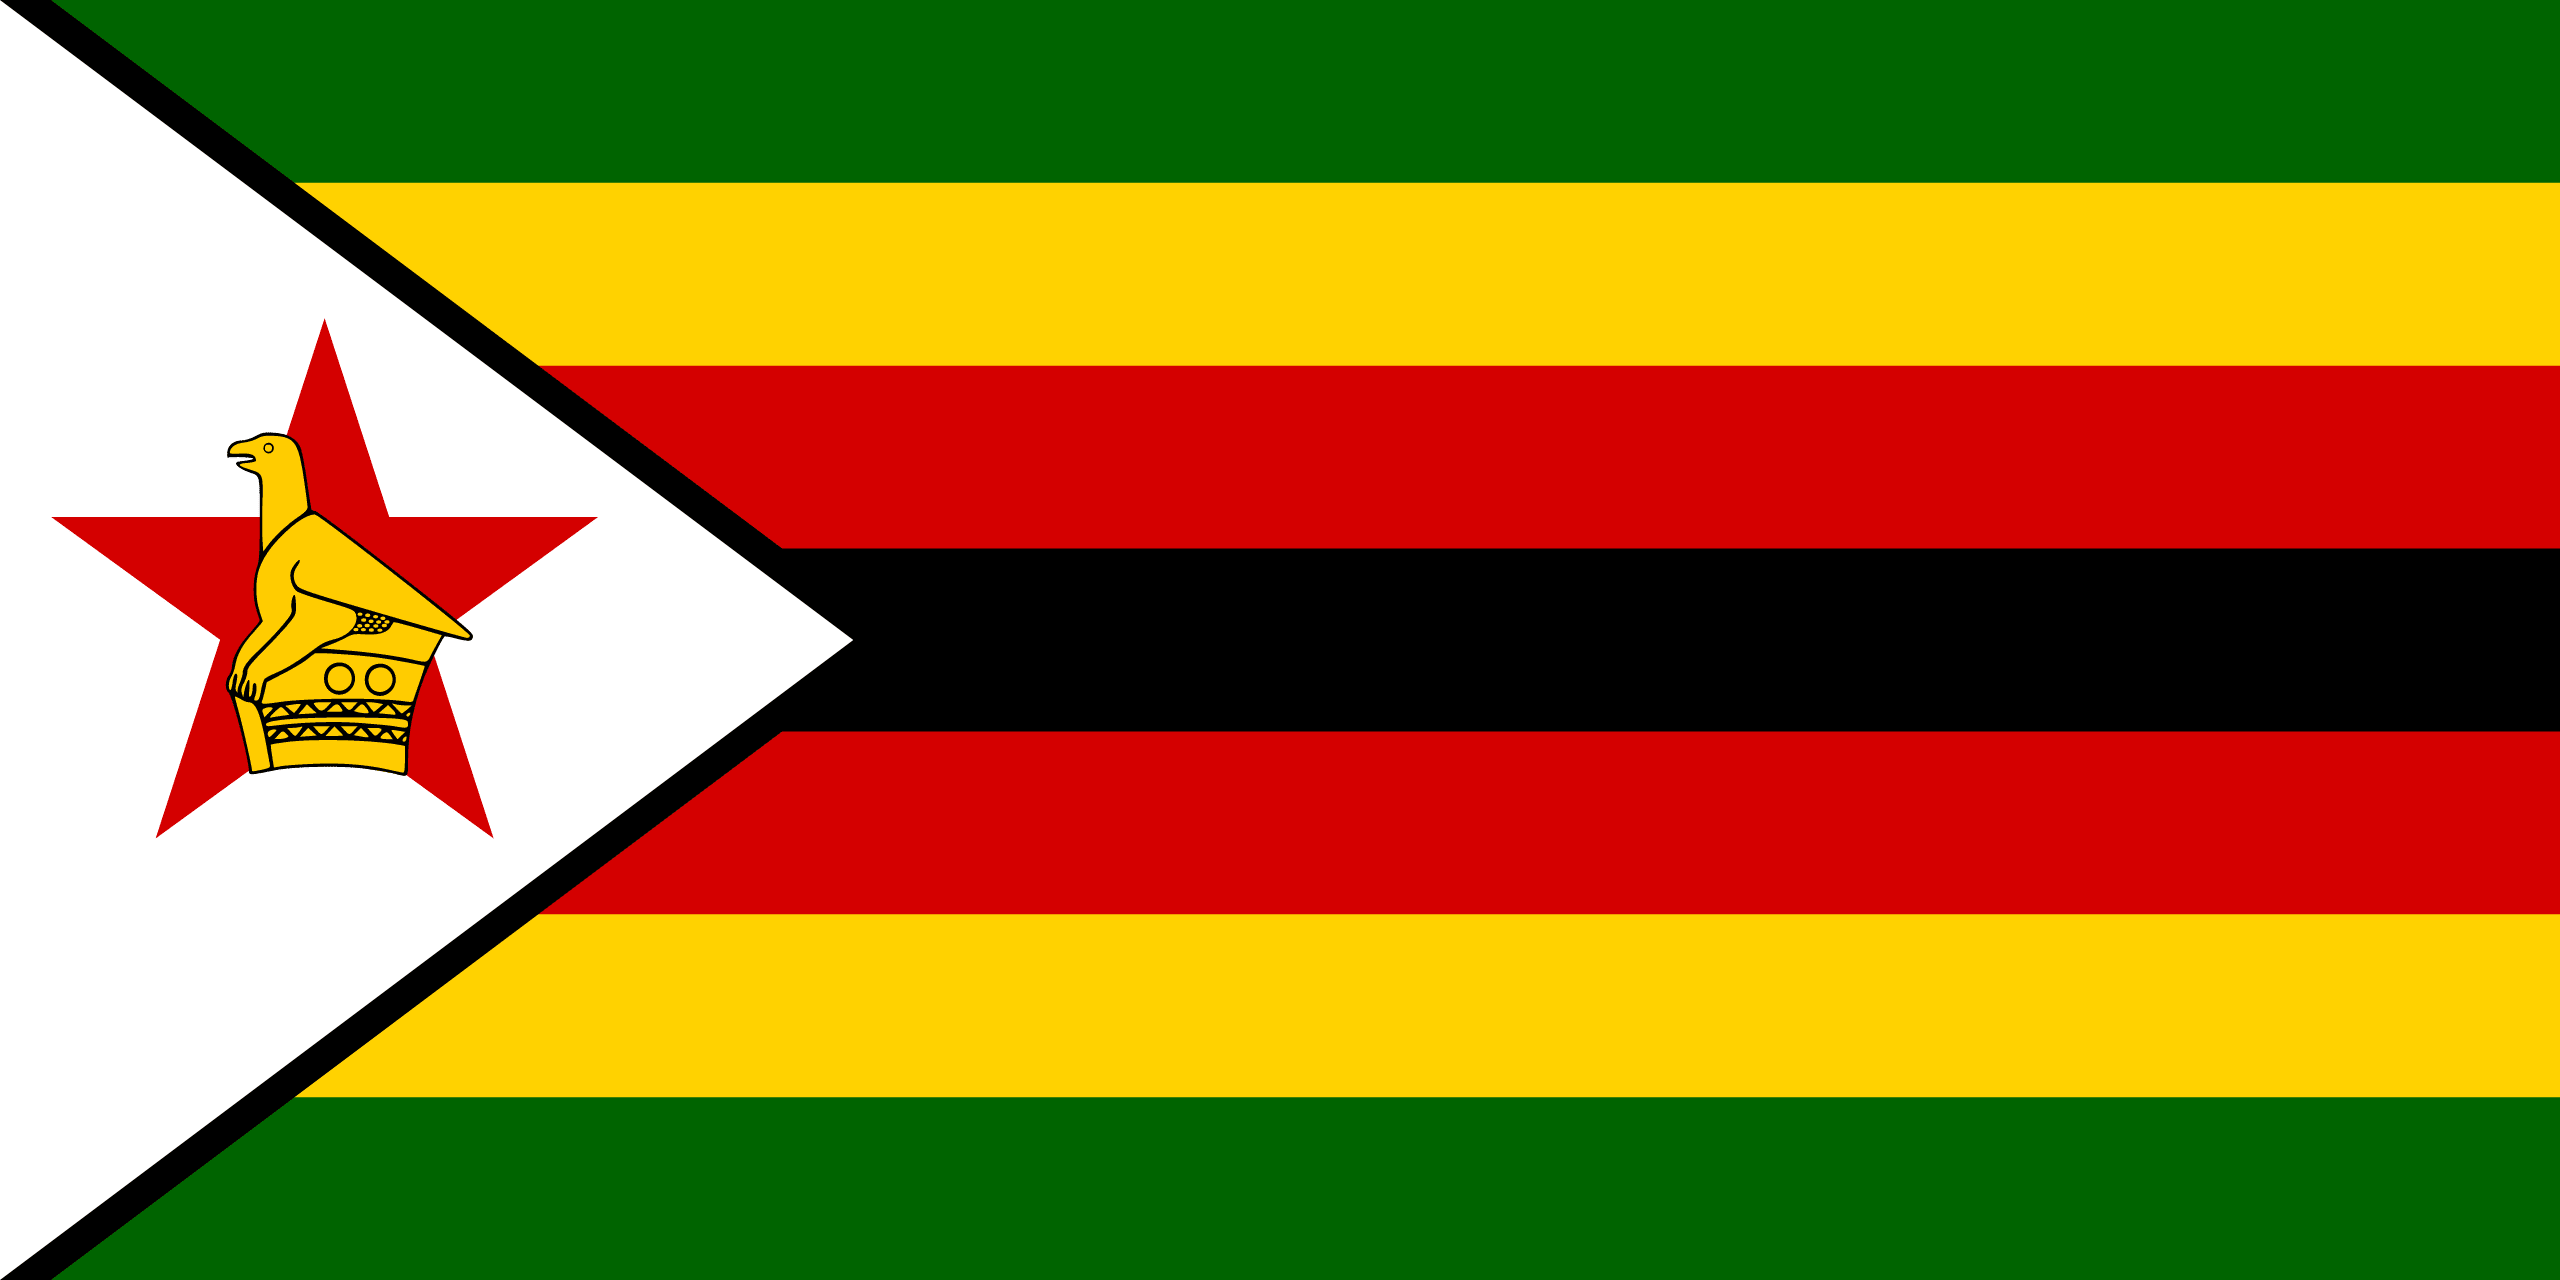 Zimbabwe national anthem song